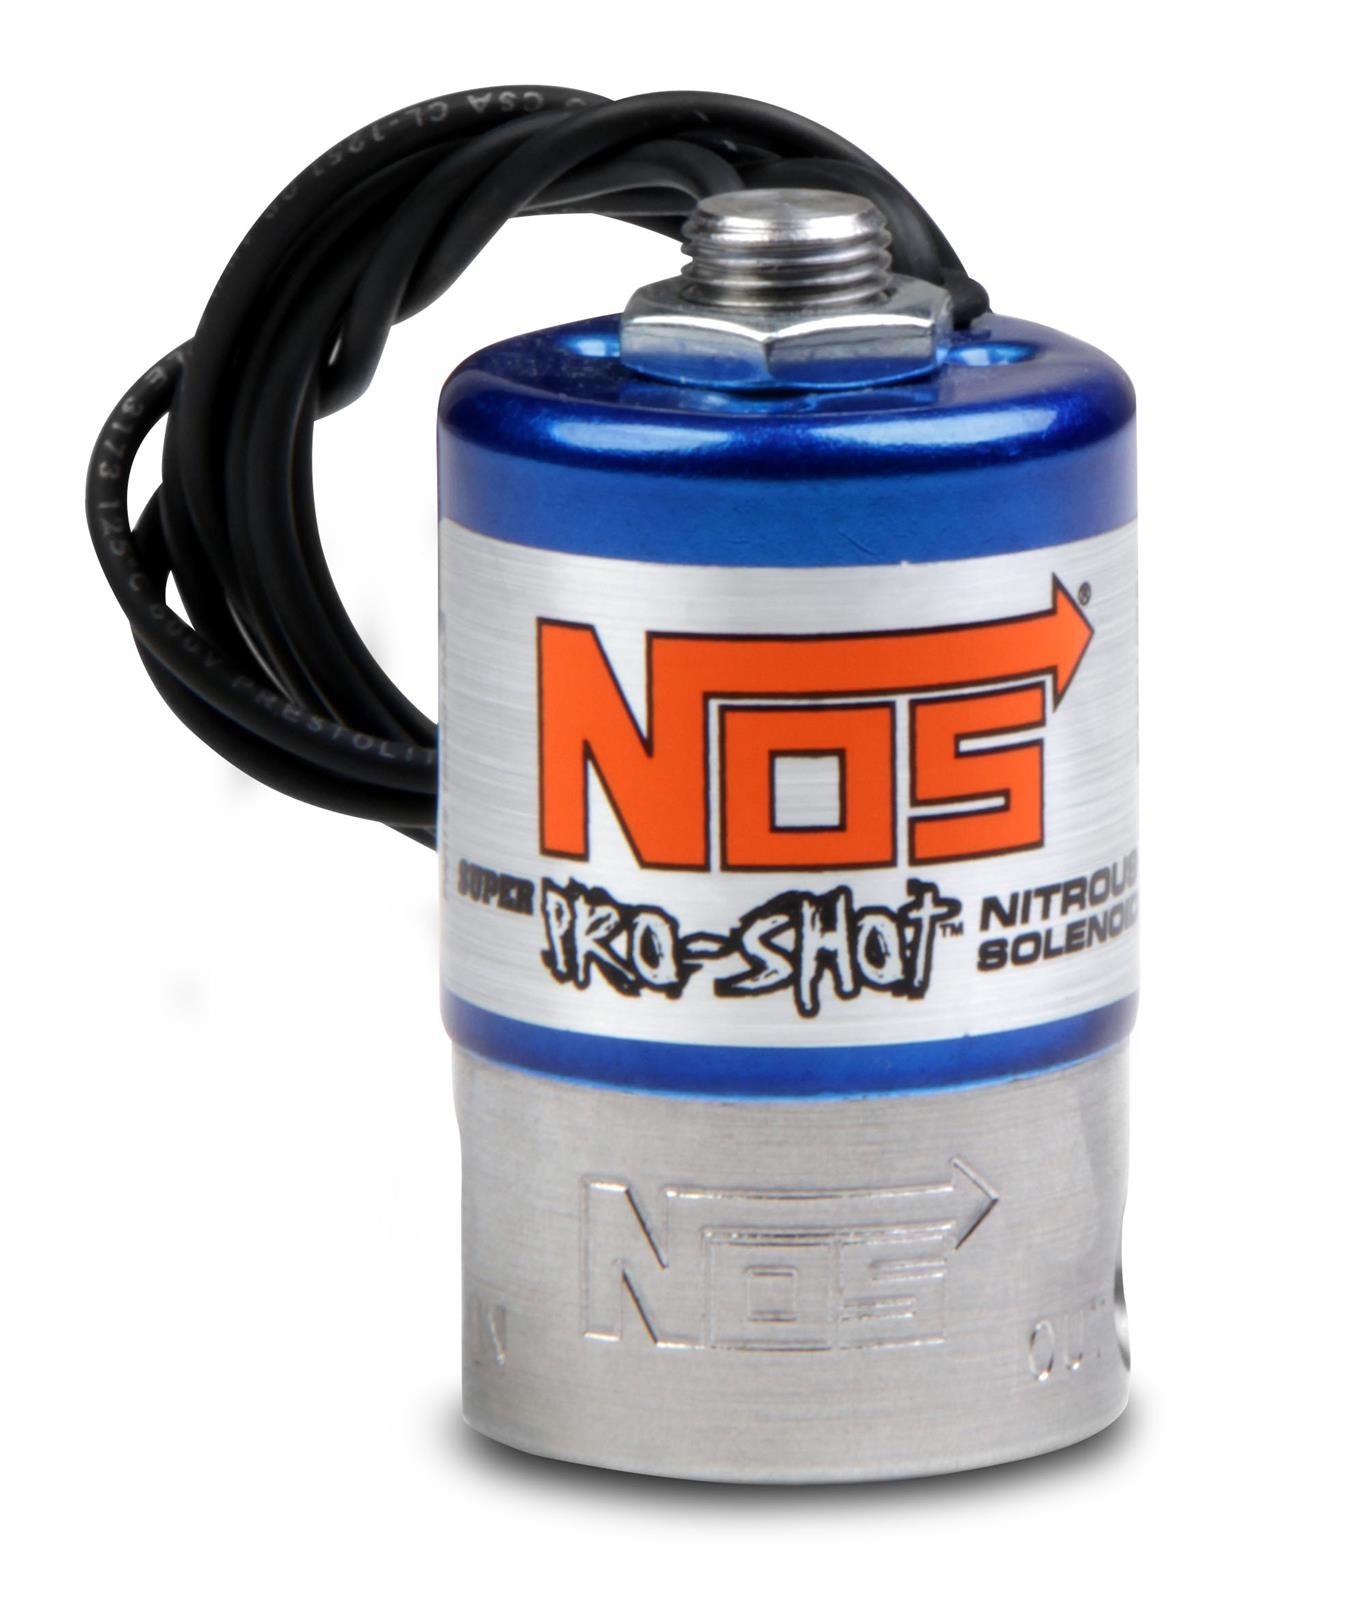 NOS Super Pro Shot Nitrous Oxide Solenoids 18045NOS